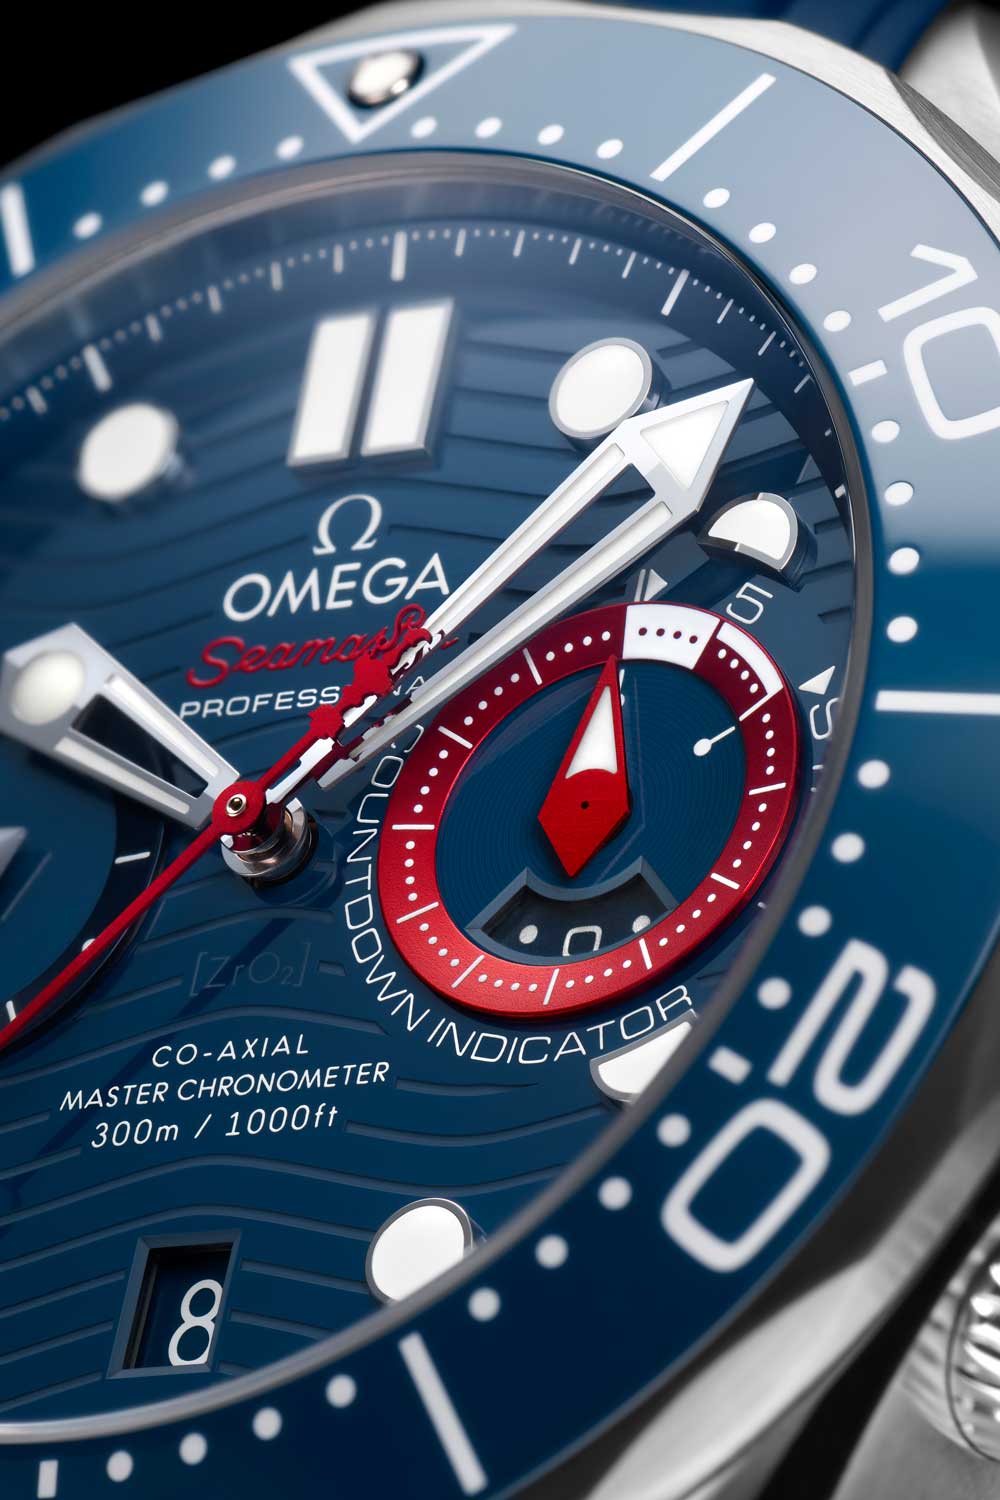 Chiếc đồng hồ này làm nổi bật cảm giác mạnh mẽ về cuộc đua Cup của Mỹ với màu đỏ, trắng và xanh lam với các điểm nhấn màu đỏ đậm trên mặt số.